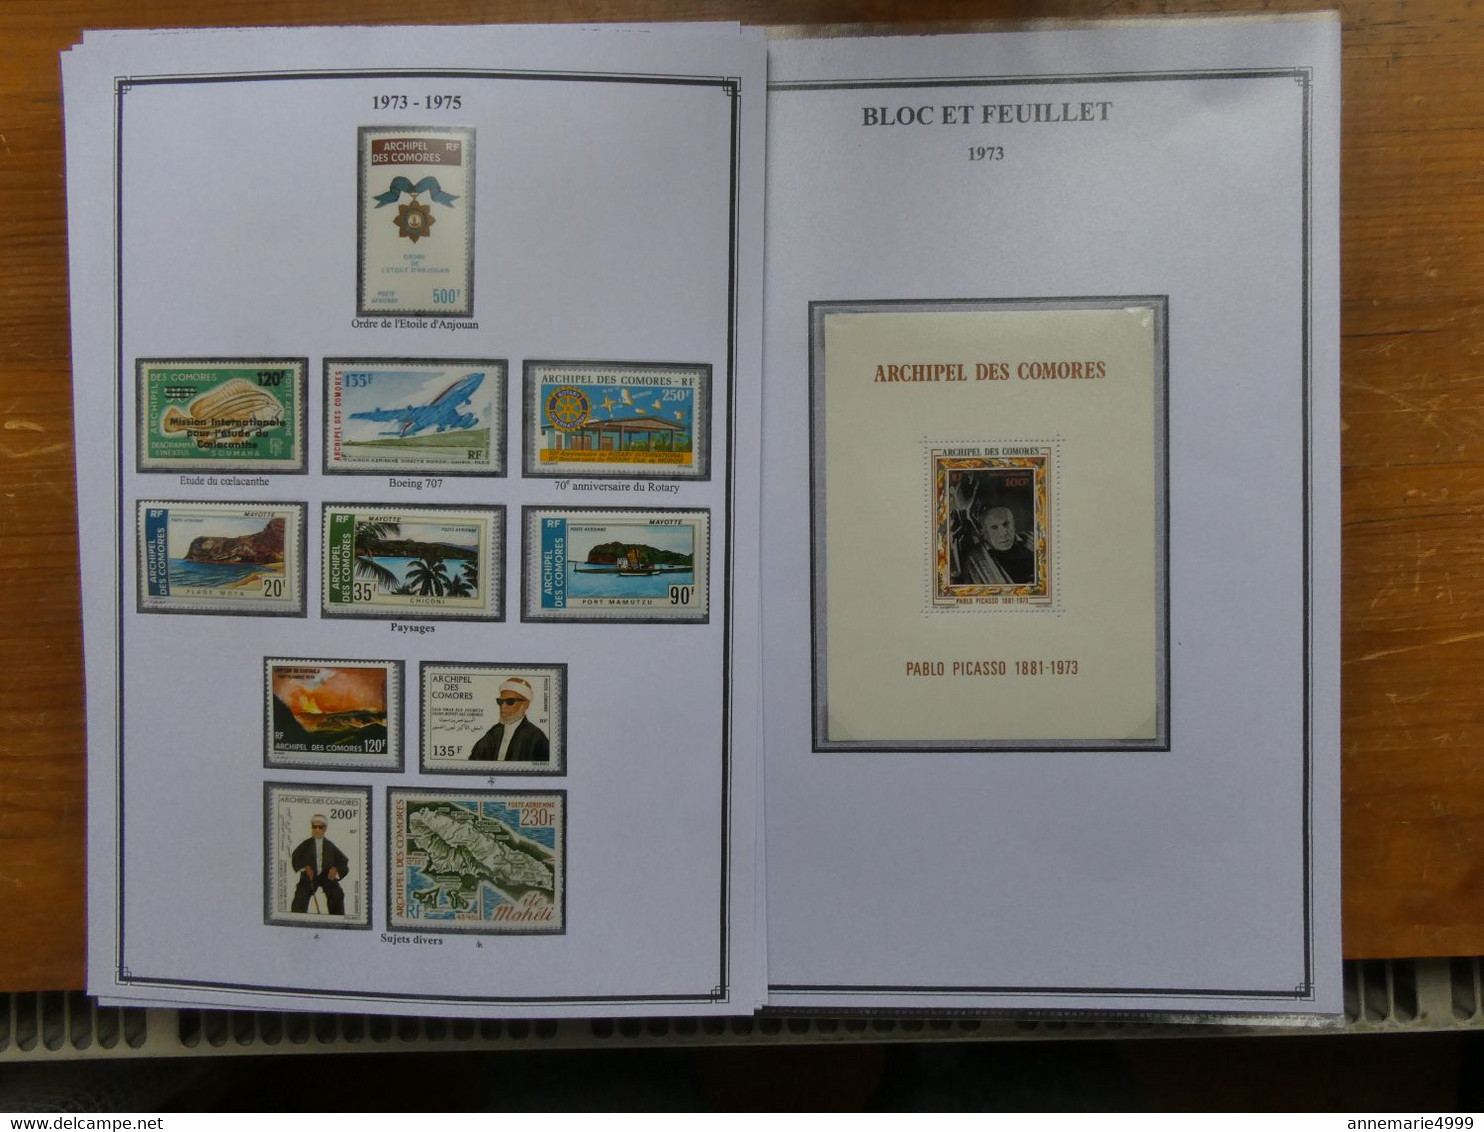 ARCHIPEL DES COMORES Complet Neufs sans charnières exceptés une dizaine de timbres Cote 1200 € Voir commentaire